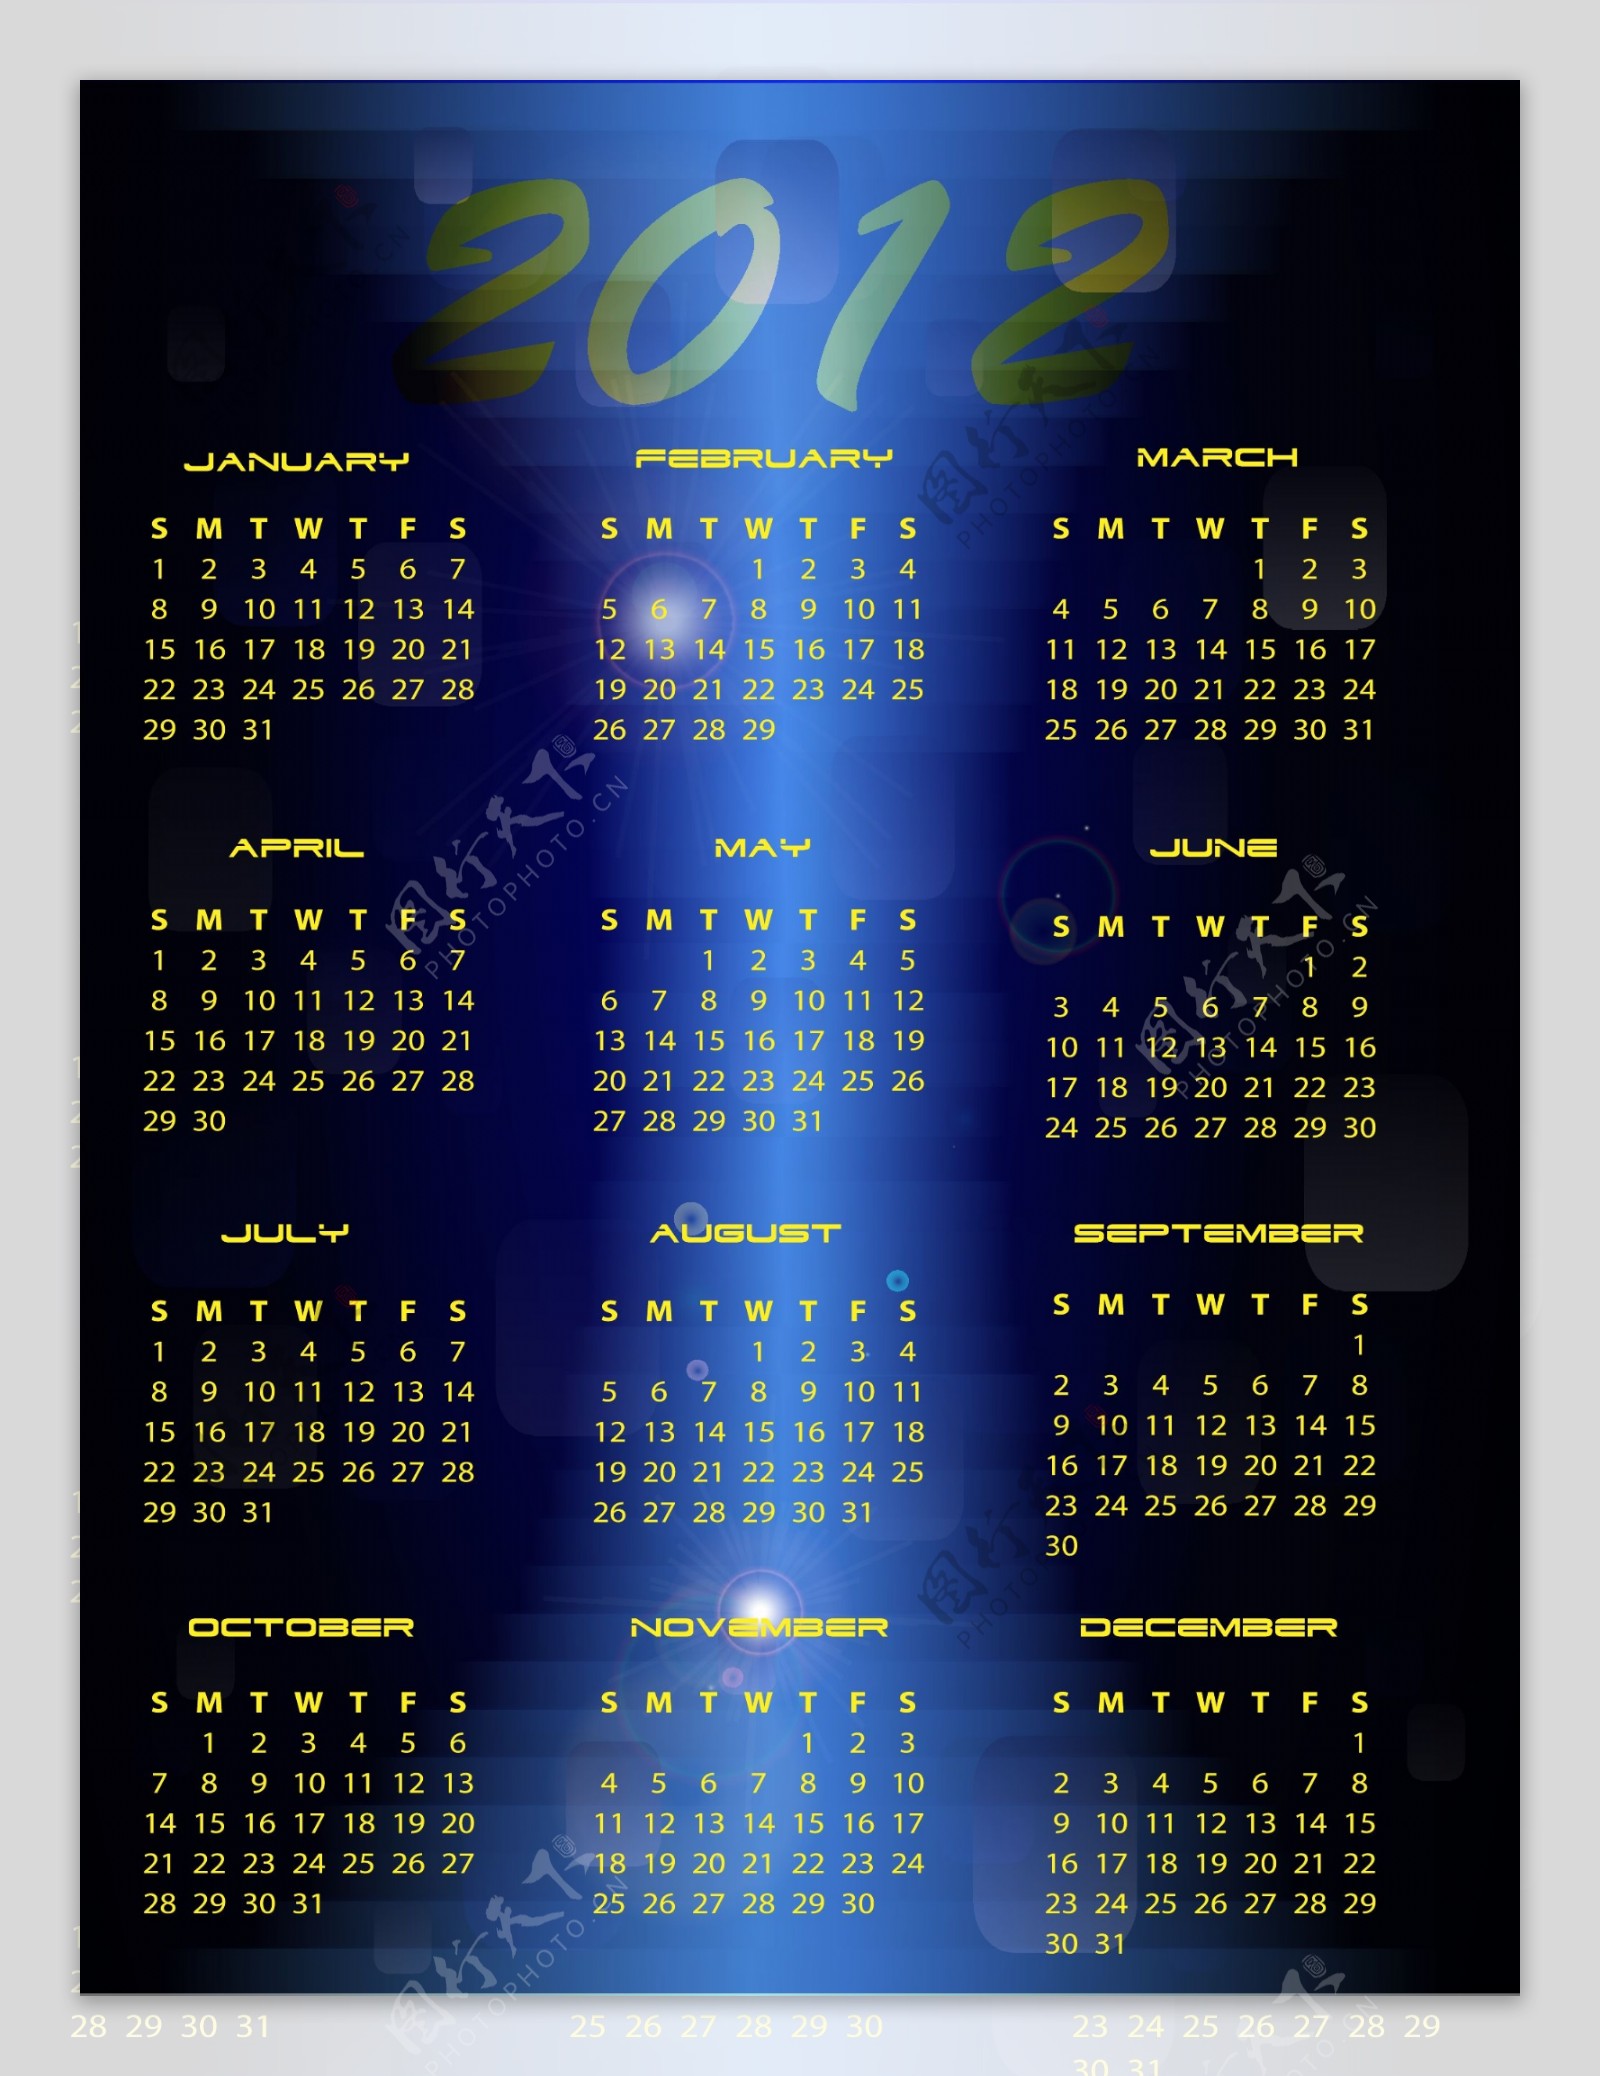 2012年日历